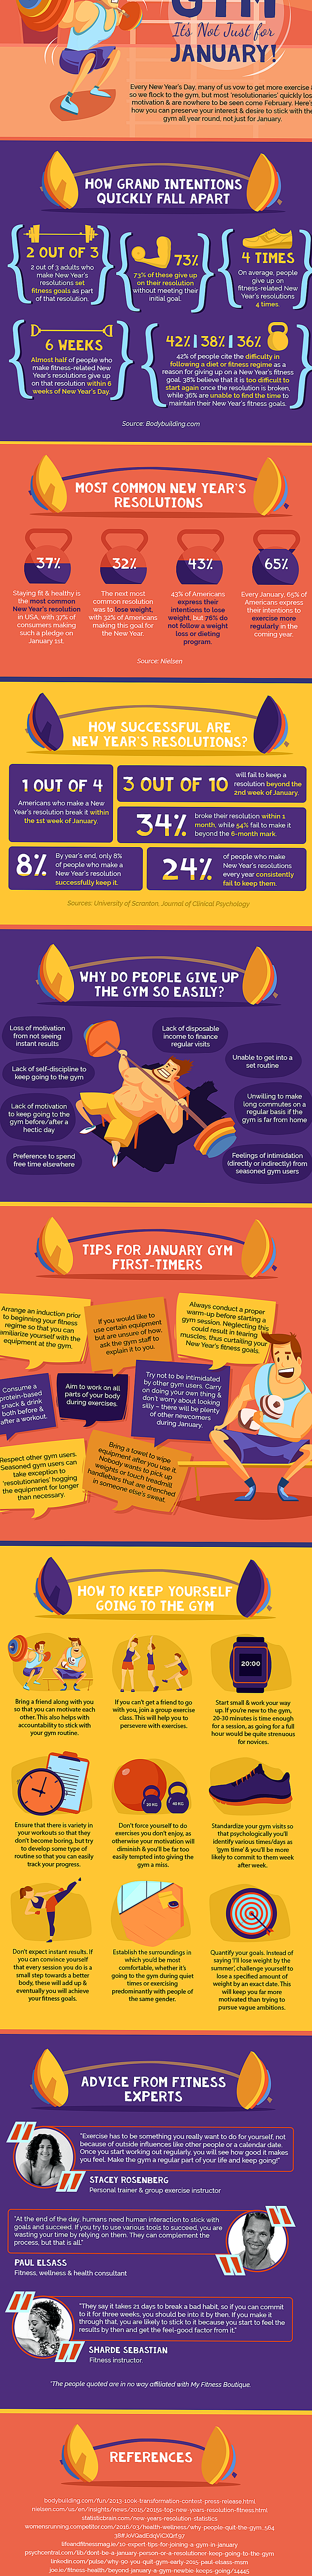 Infografía: consejos para ayudarlo a cumplir sus resoluciones de Año Nuevo relacionadas con la actividad física